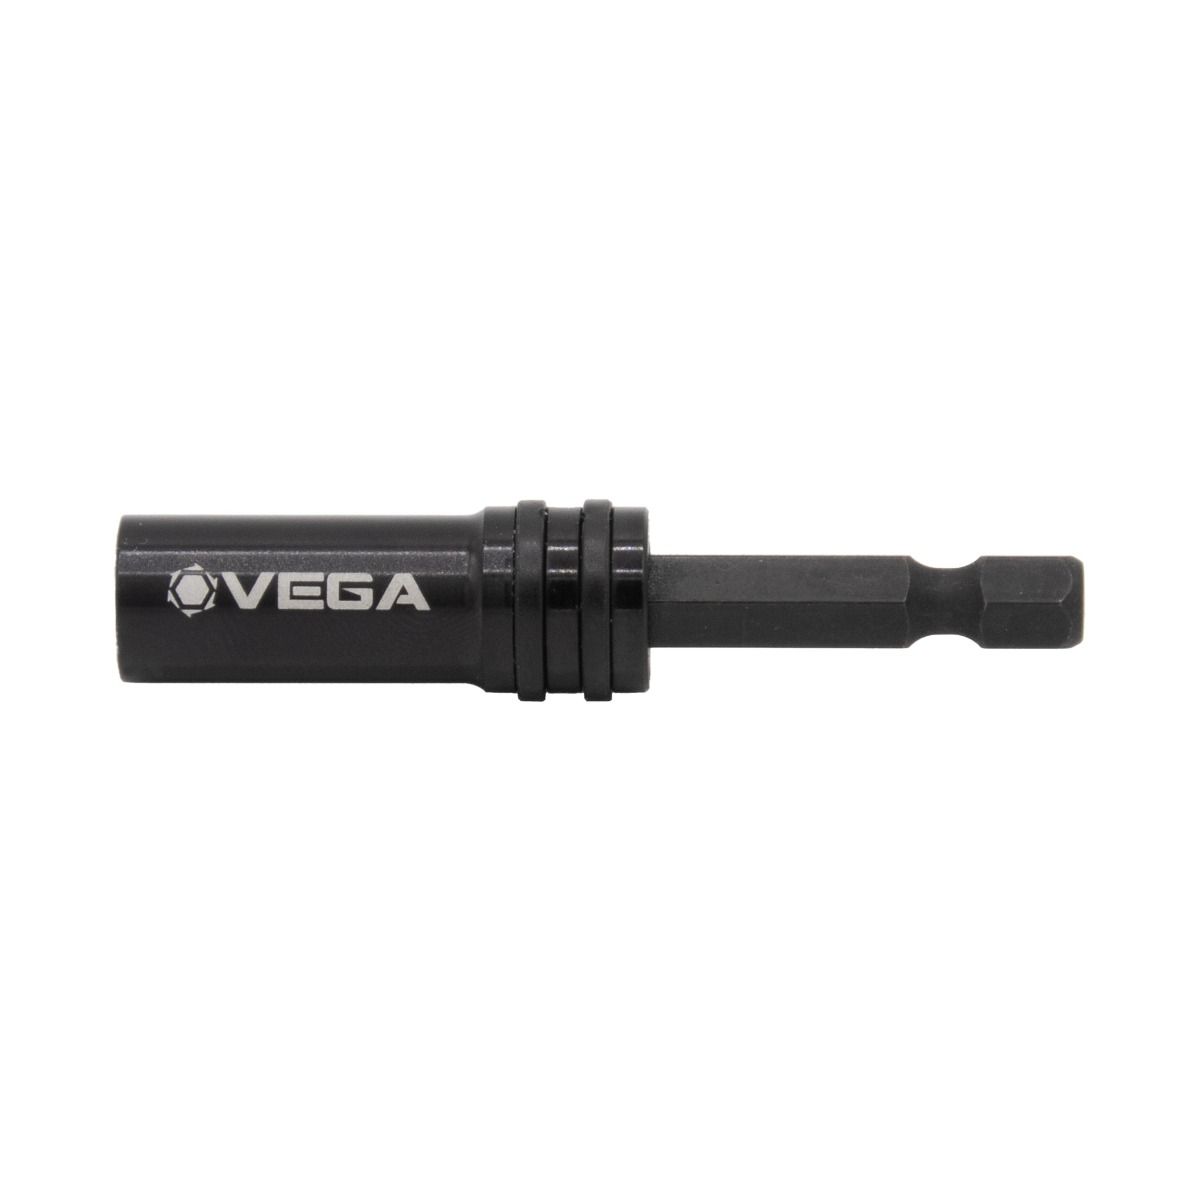 Vega Spin-Grip Locking Bit Holder